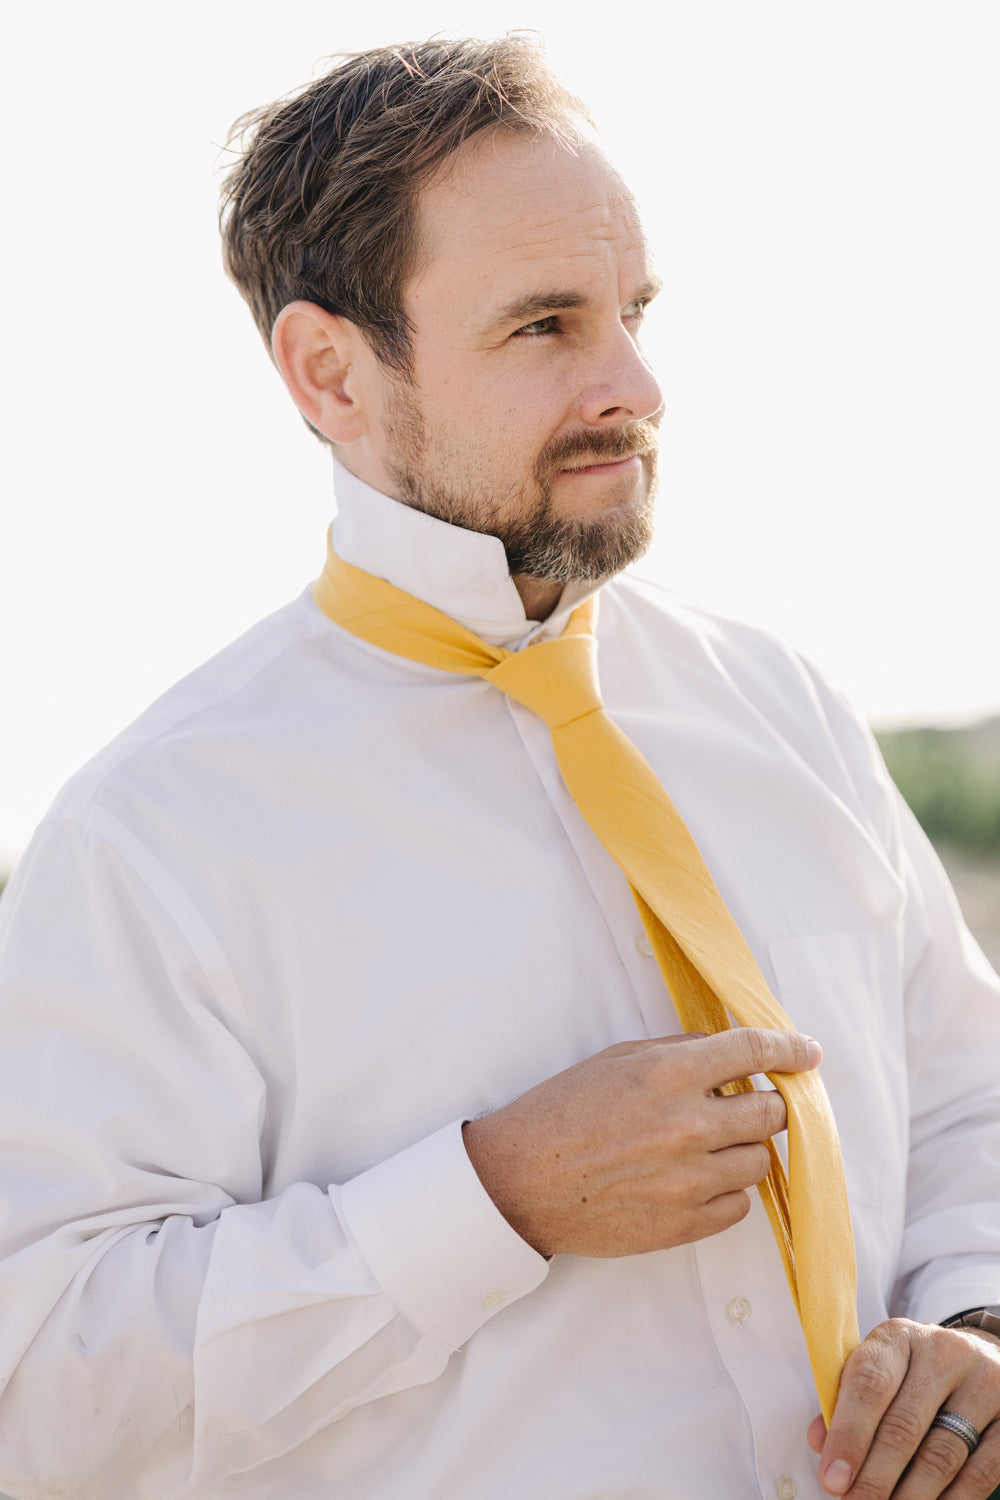 Golden tie worn with a white shirt.